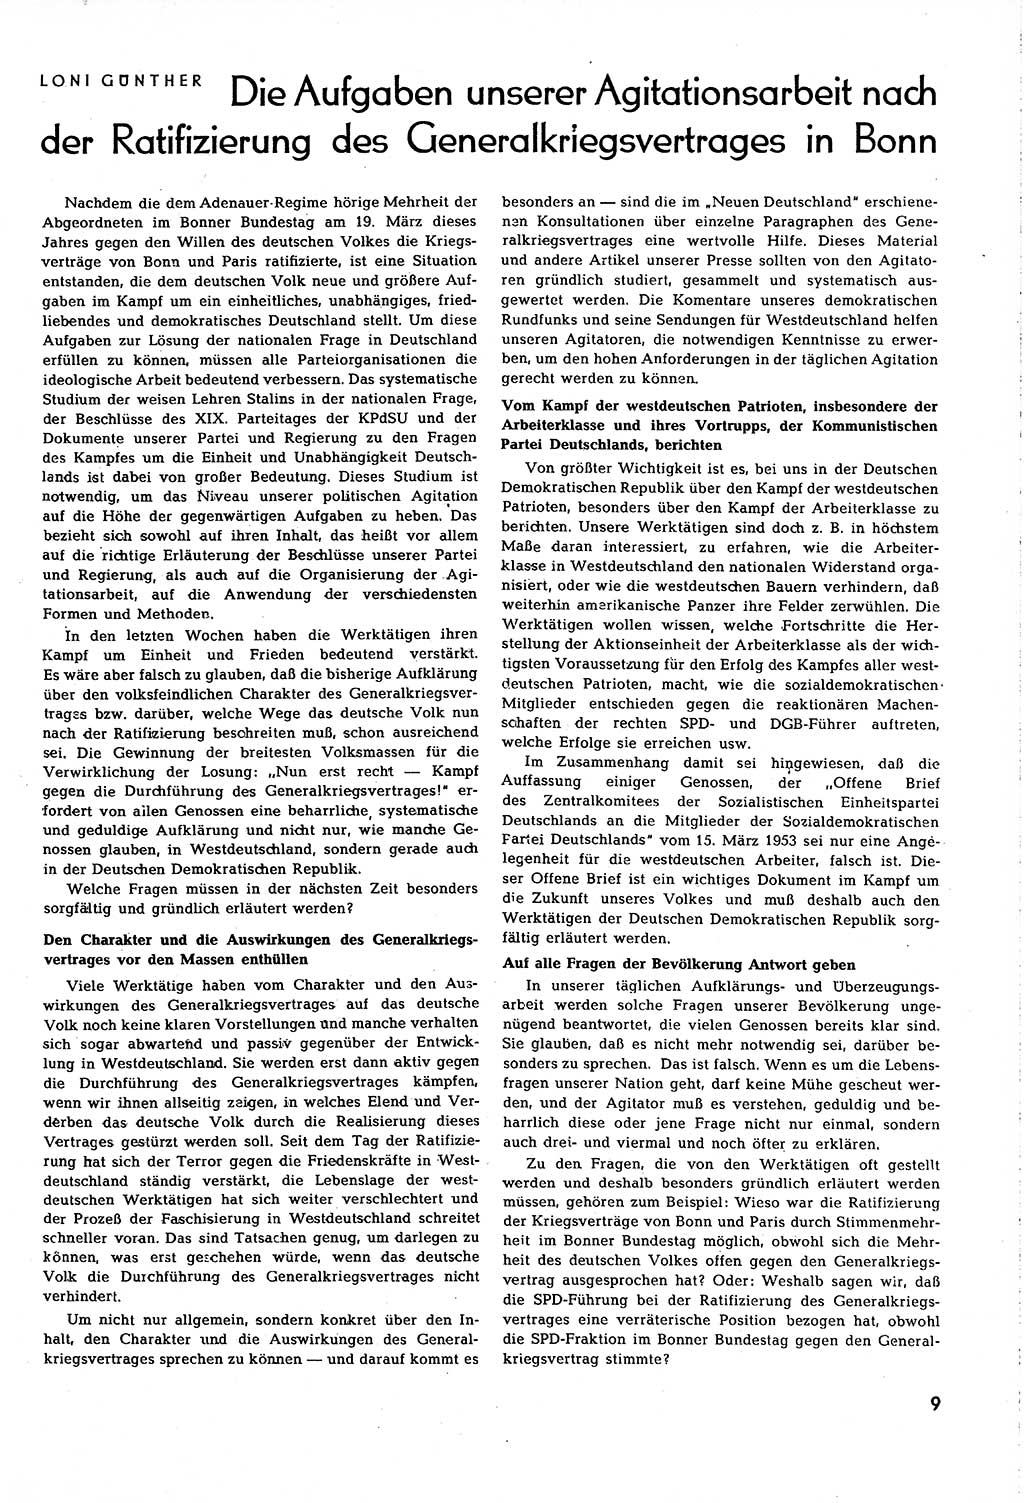 Neuer Weg (NW), Organ des Zentralkomitees (ZK) [Sozialistische Einheitspartei Deutschlands (SED)] für alle Parteiarbeiter, 8. Jahrgang [Deutsche Demokratische Republik (DDR)] 1953, Heft 8/9 (NW ZK SED DDR 1953, H. 8/9)